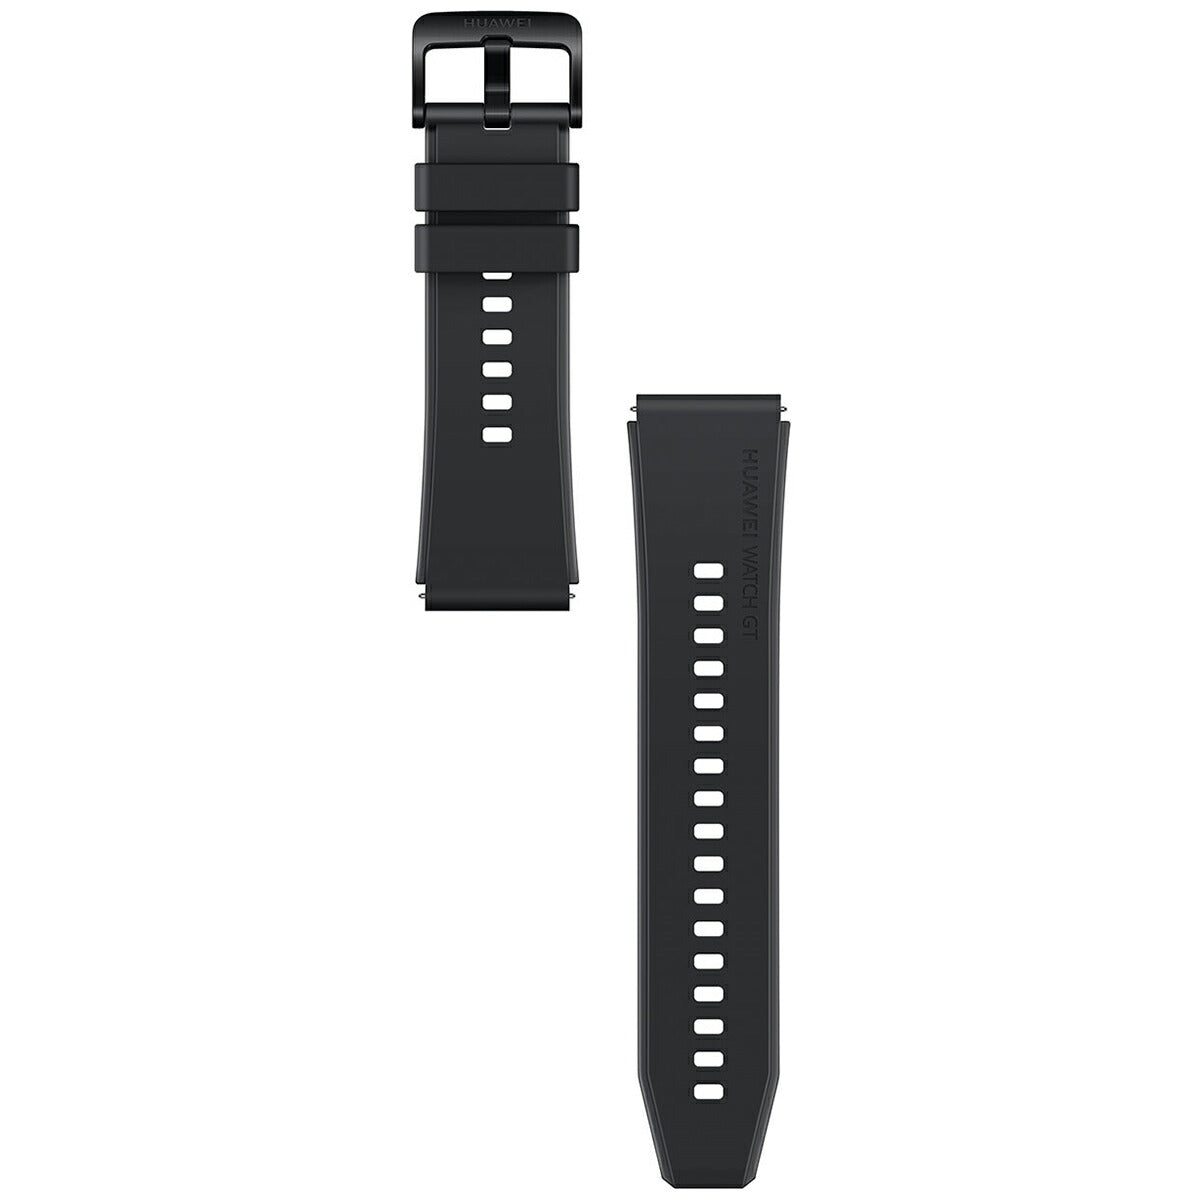 ファーウェイ HUAWEI スマートウォッチ WATCH GT 2 Pro Night Black ナイトブラック GPS 腕時計 メンズ レディース ウェアラブル 血中酸素 通話機能 HV8W000090